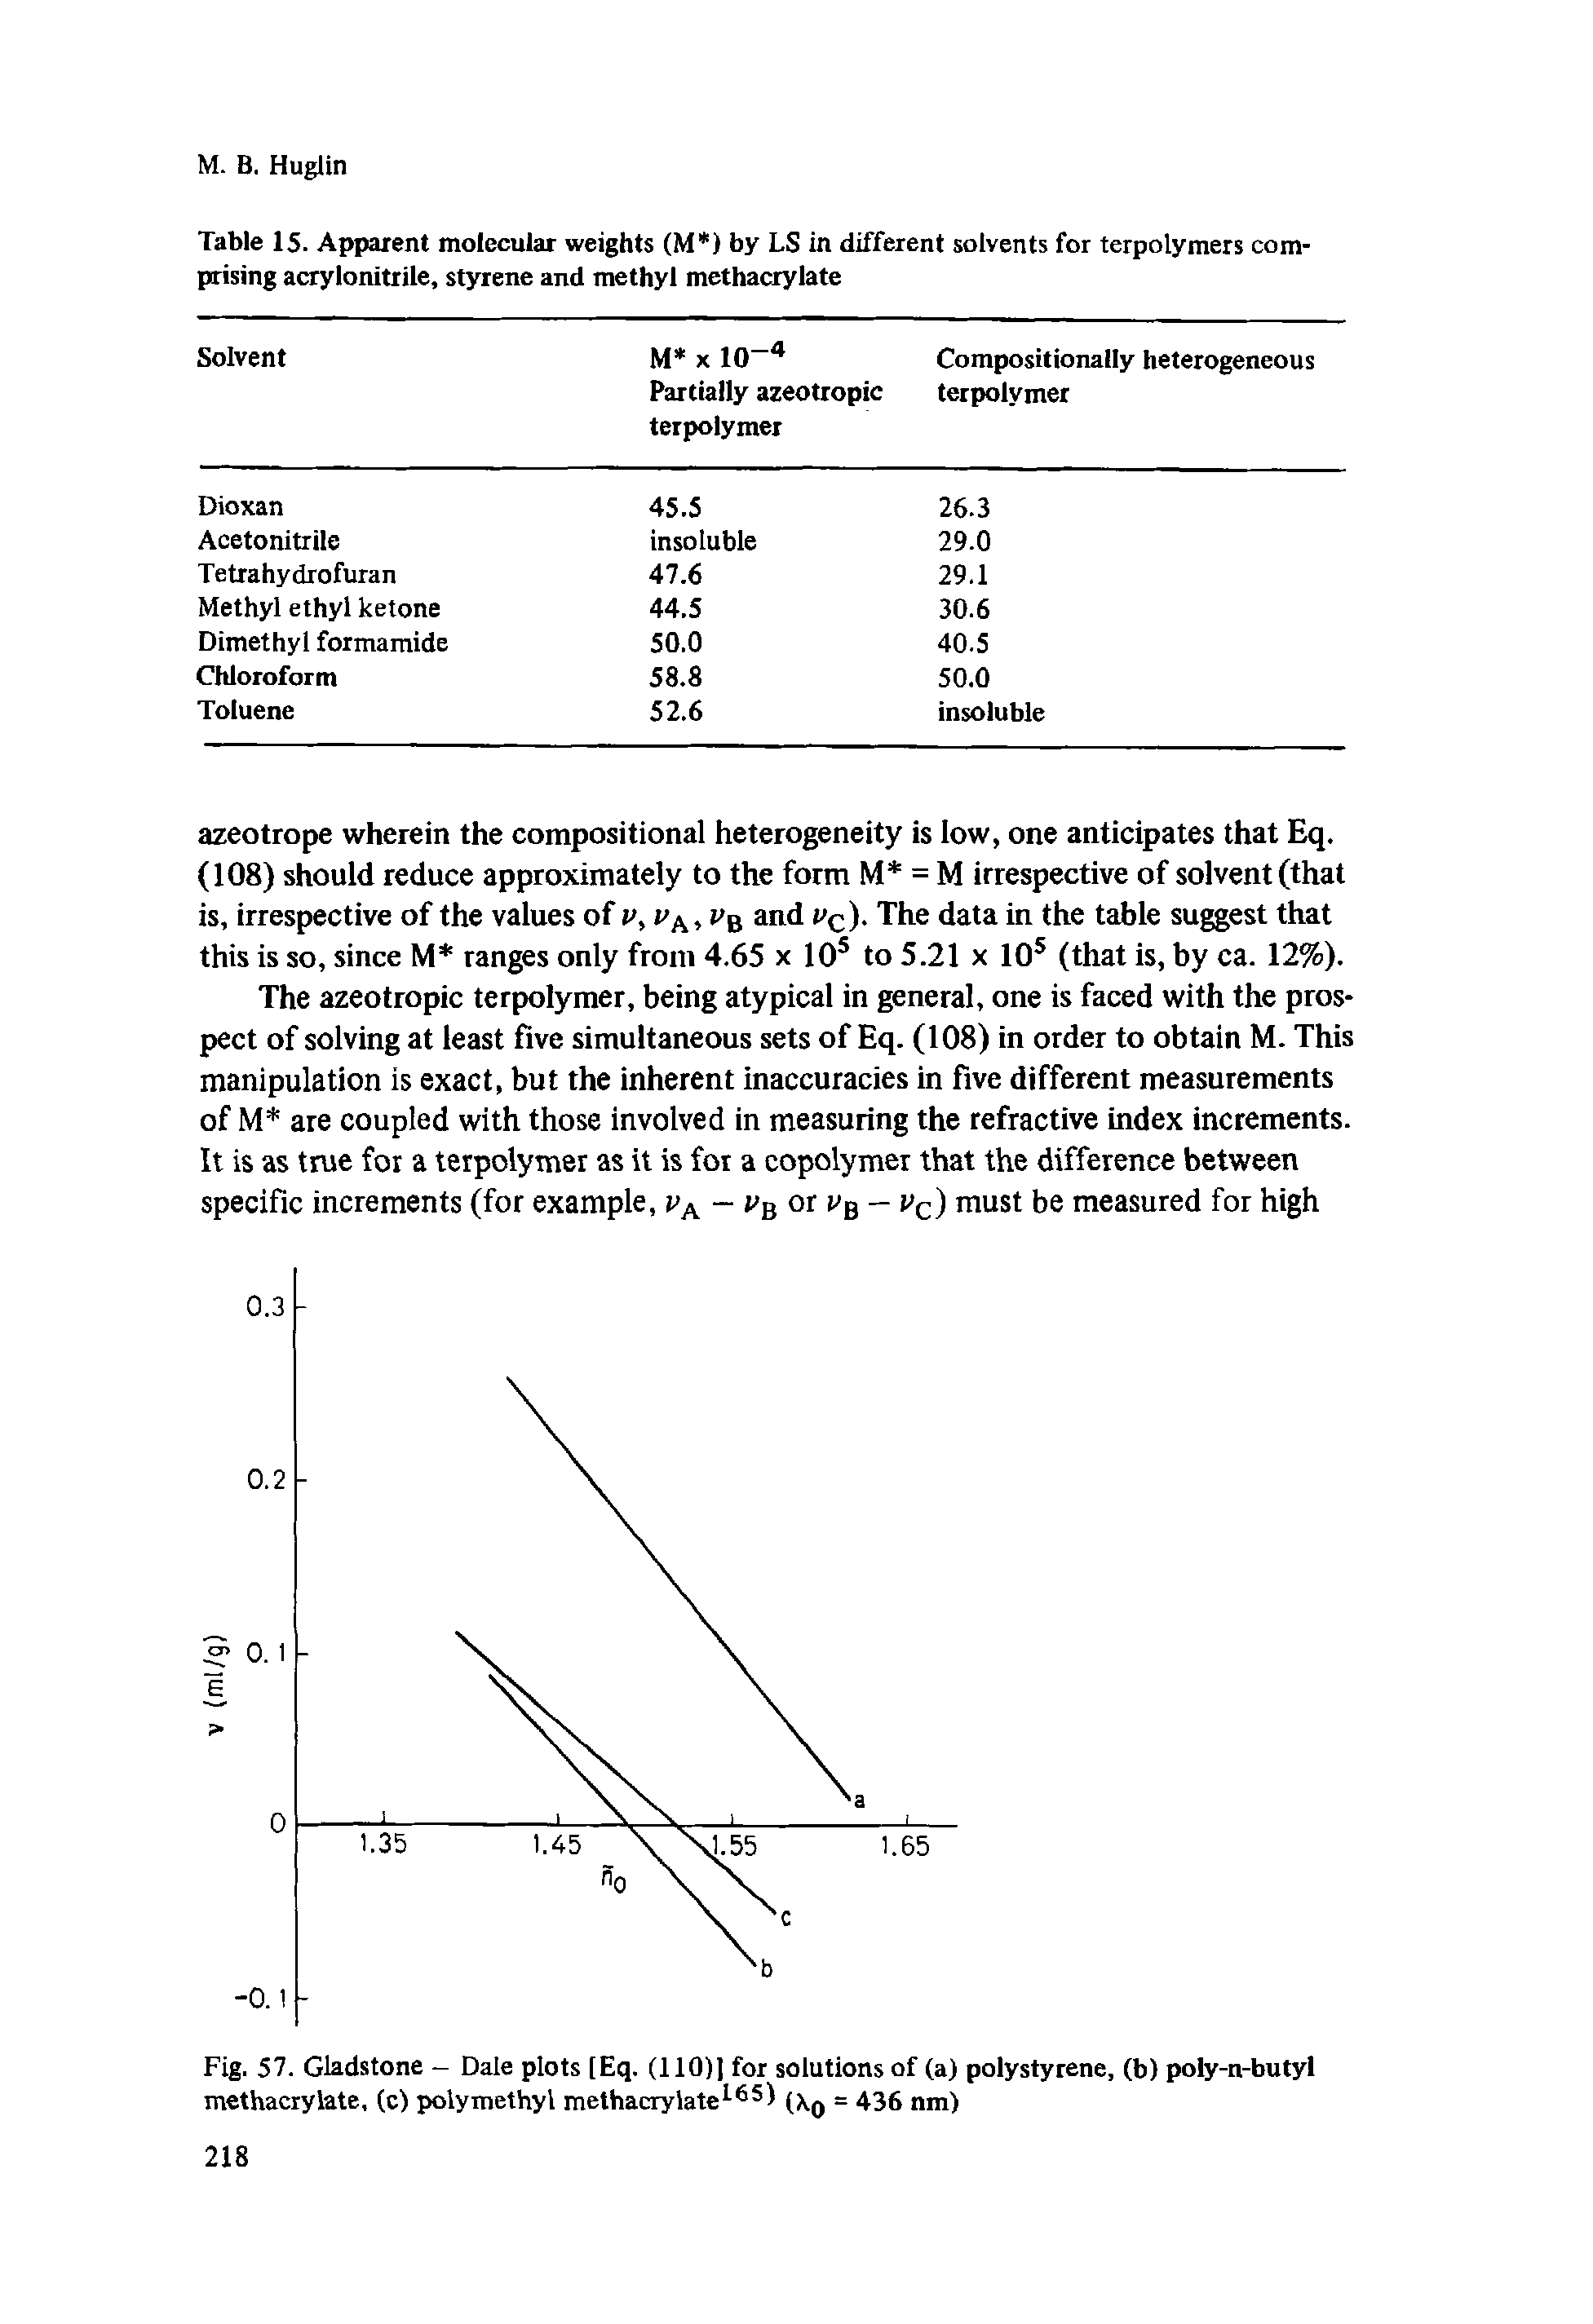 Fig. 57. Gladstone - Dale plots [Eq. (110)] for solutions of (a) polystyrene, (b) poly-n-butyl methacrylate, (c) polymethyl methacrylate165 = 436 nm)...